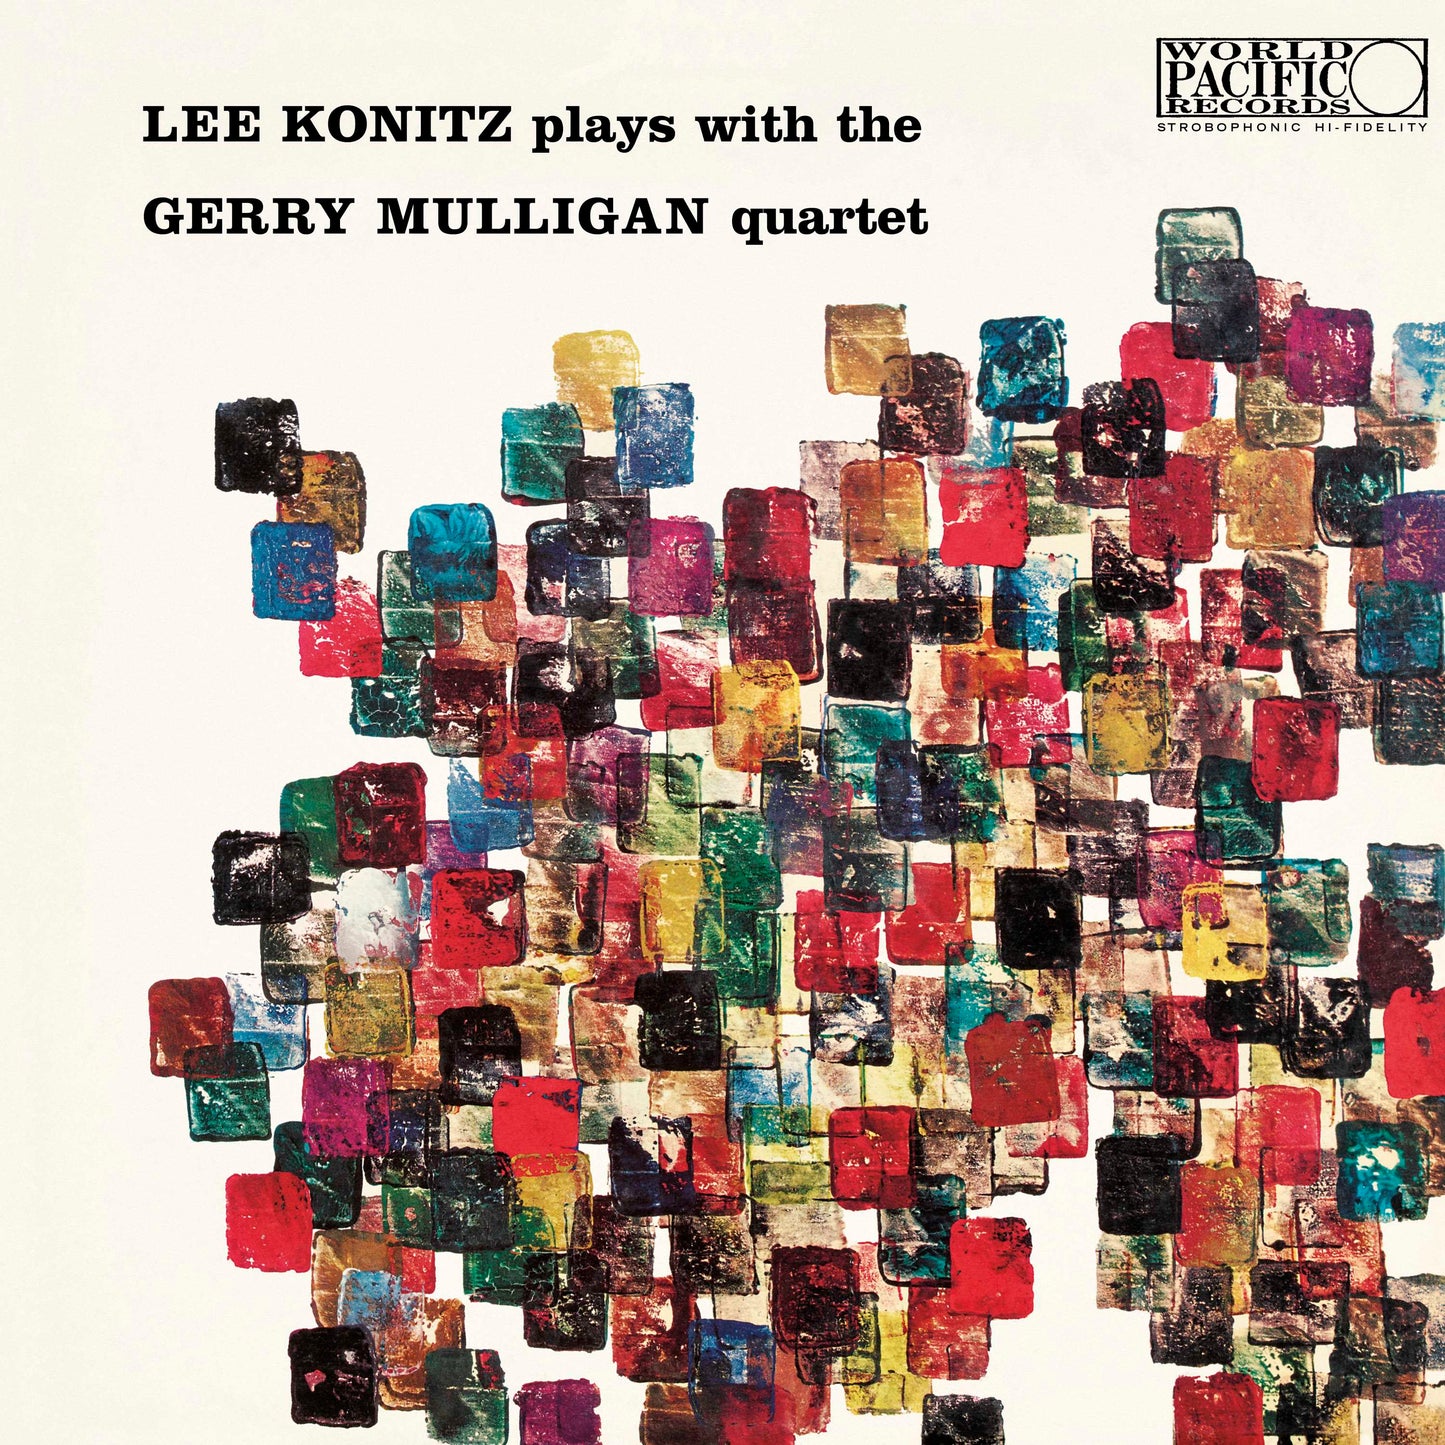 Lee Konitz &amp; Gerry Mulligan - Lee Konitz toca con el cuarteto de Gerry Mulligan - Tone Poet LP